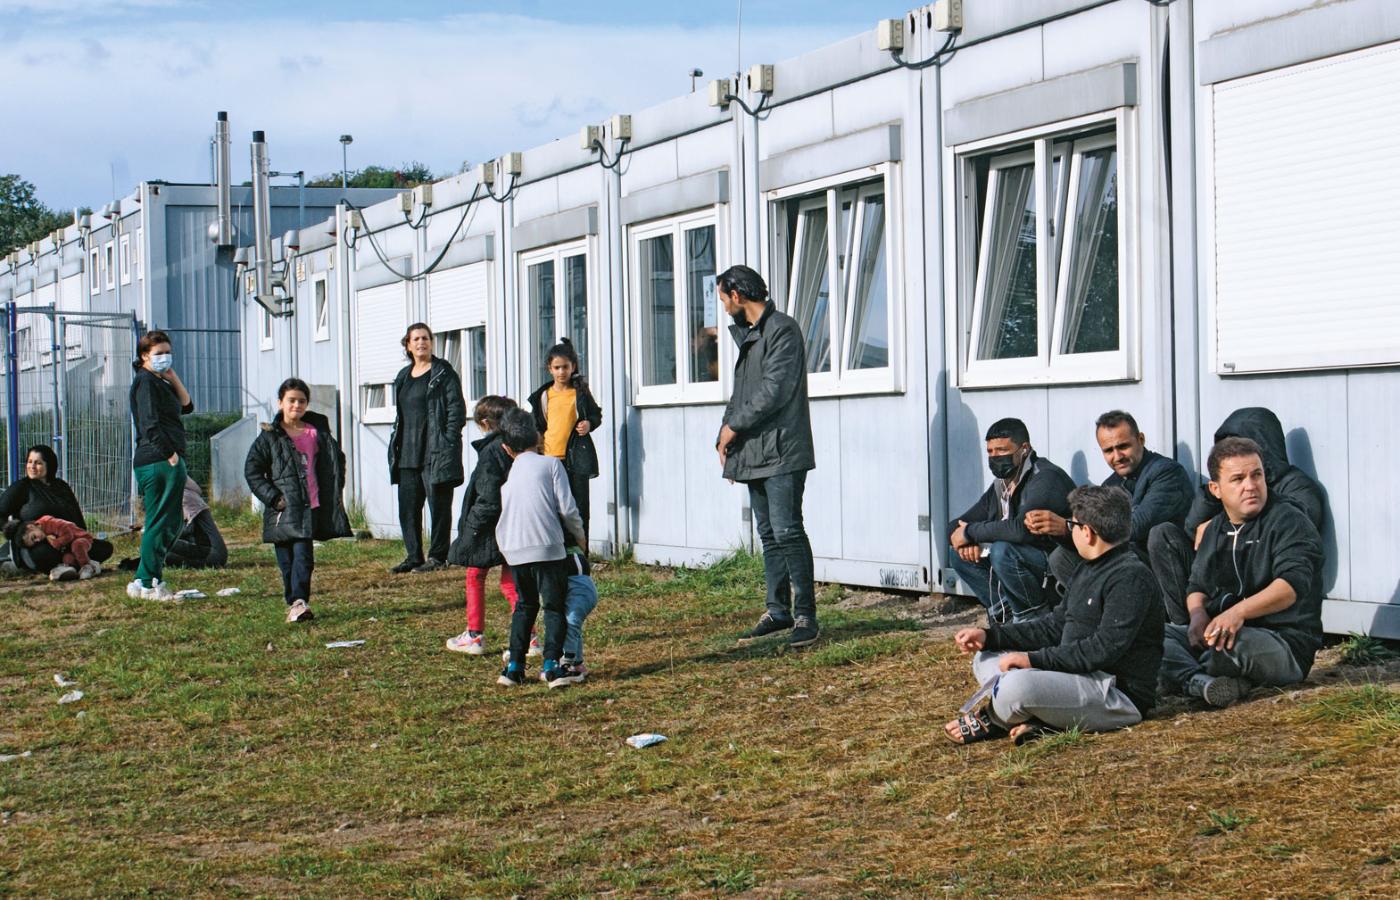 Ośrodek przejściowy w Eisenhüttenstadt. Uchodźcy liczą, że choć powinni być zawróceni do Polski, uda im się zostać w Niemczech.